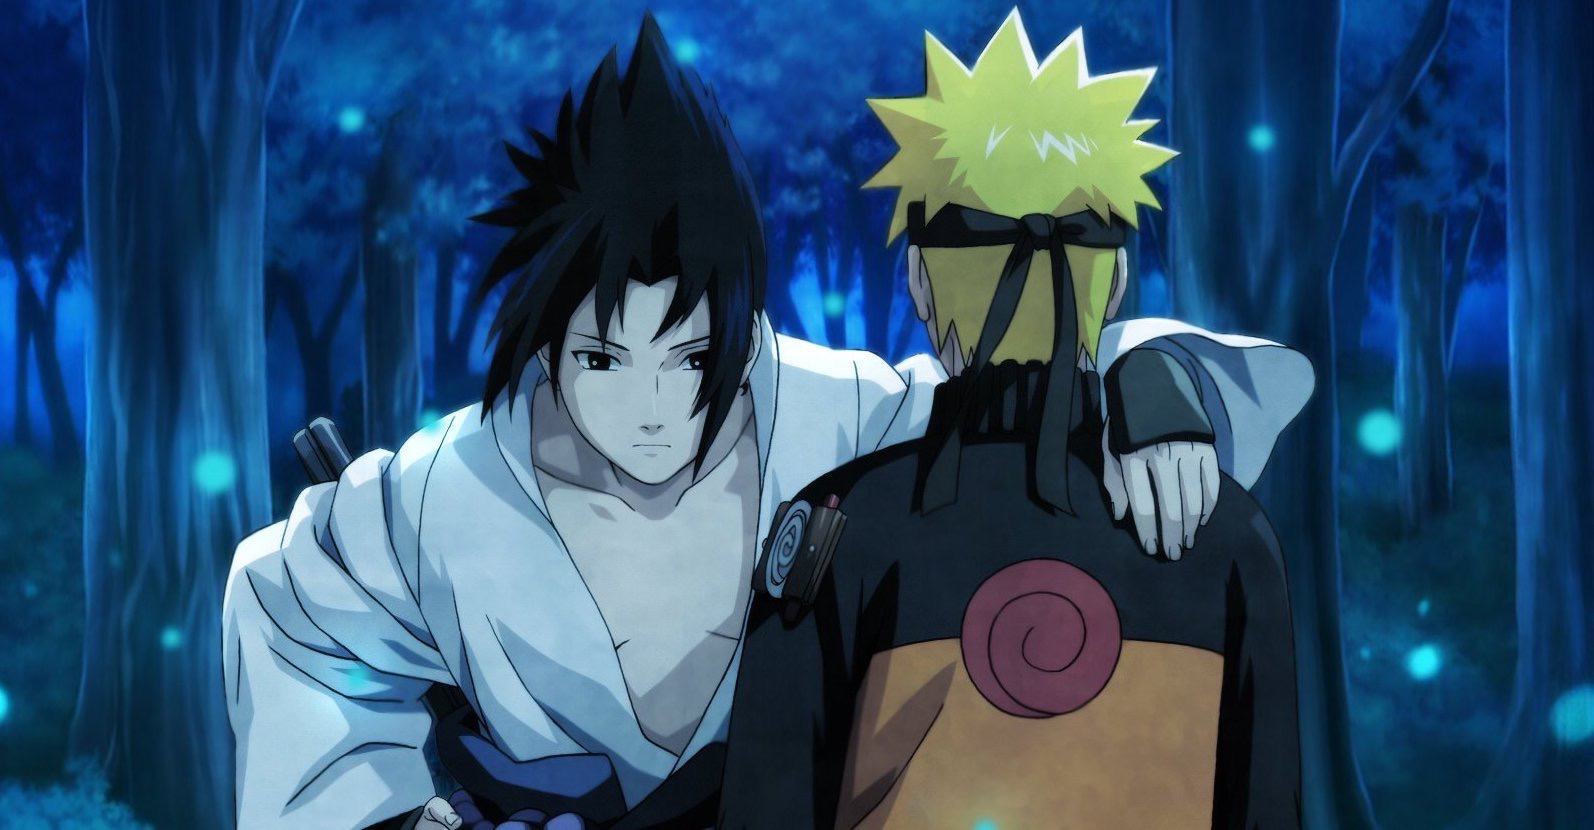 Crunchyroll.pt - E se os pais do Naruto não tivessem morrido e o clã do  Sasuke não tivesse sido exterminado? A Vila Oculta da Folha ainda teria seu  poderoso Quarto Hokage e